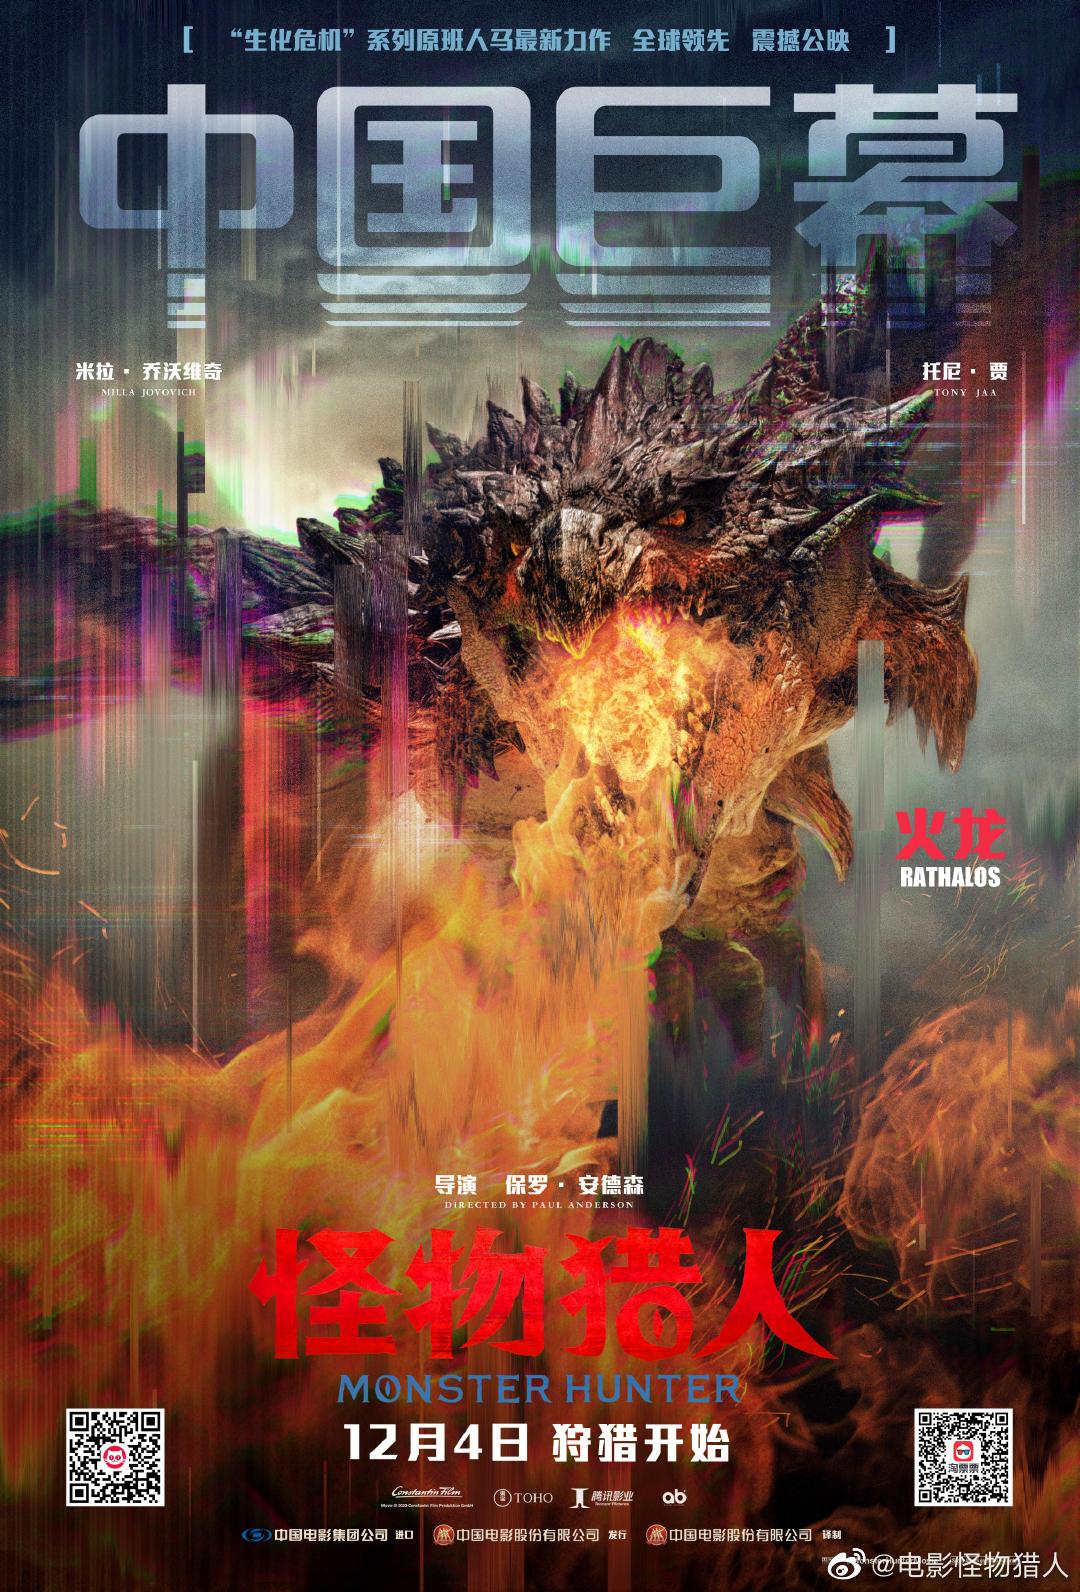 剧透预警 怪物猎人电影全制式海报公开nga玩家社区